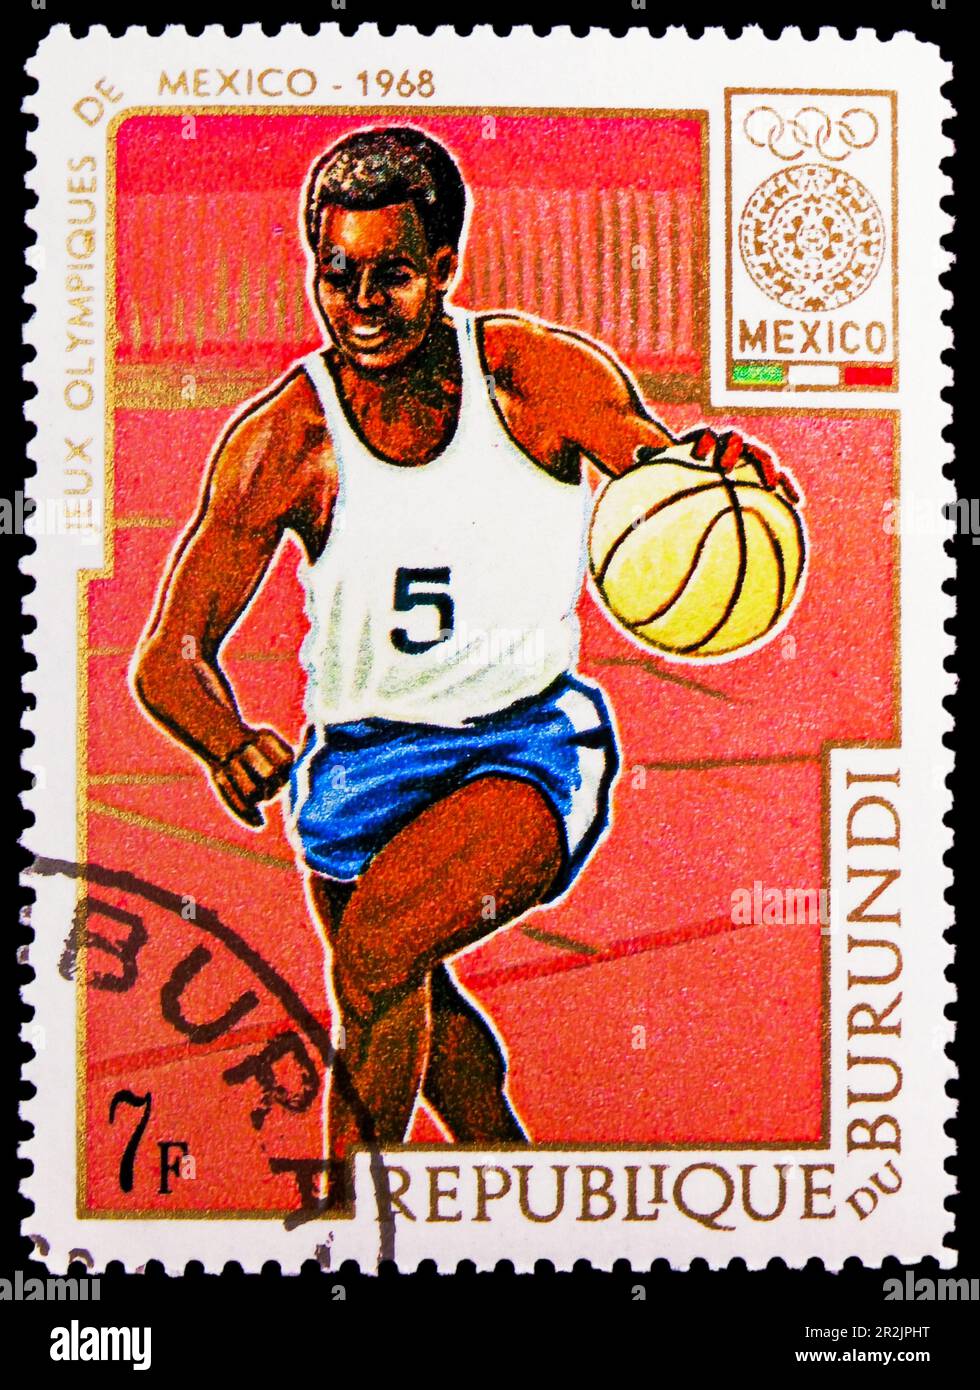 MOSCOU, RUSSIE - 18 MAI 2023 : timbre-poste imprimé au Burundi montre Basketball, Jeux Olympiques d'été 1968 - série Mexico, vers 1968 Banque D'Images